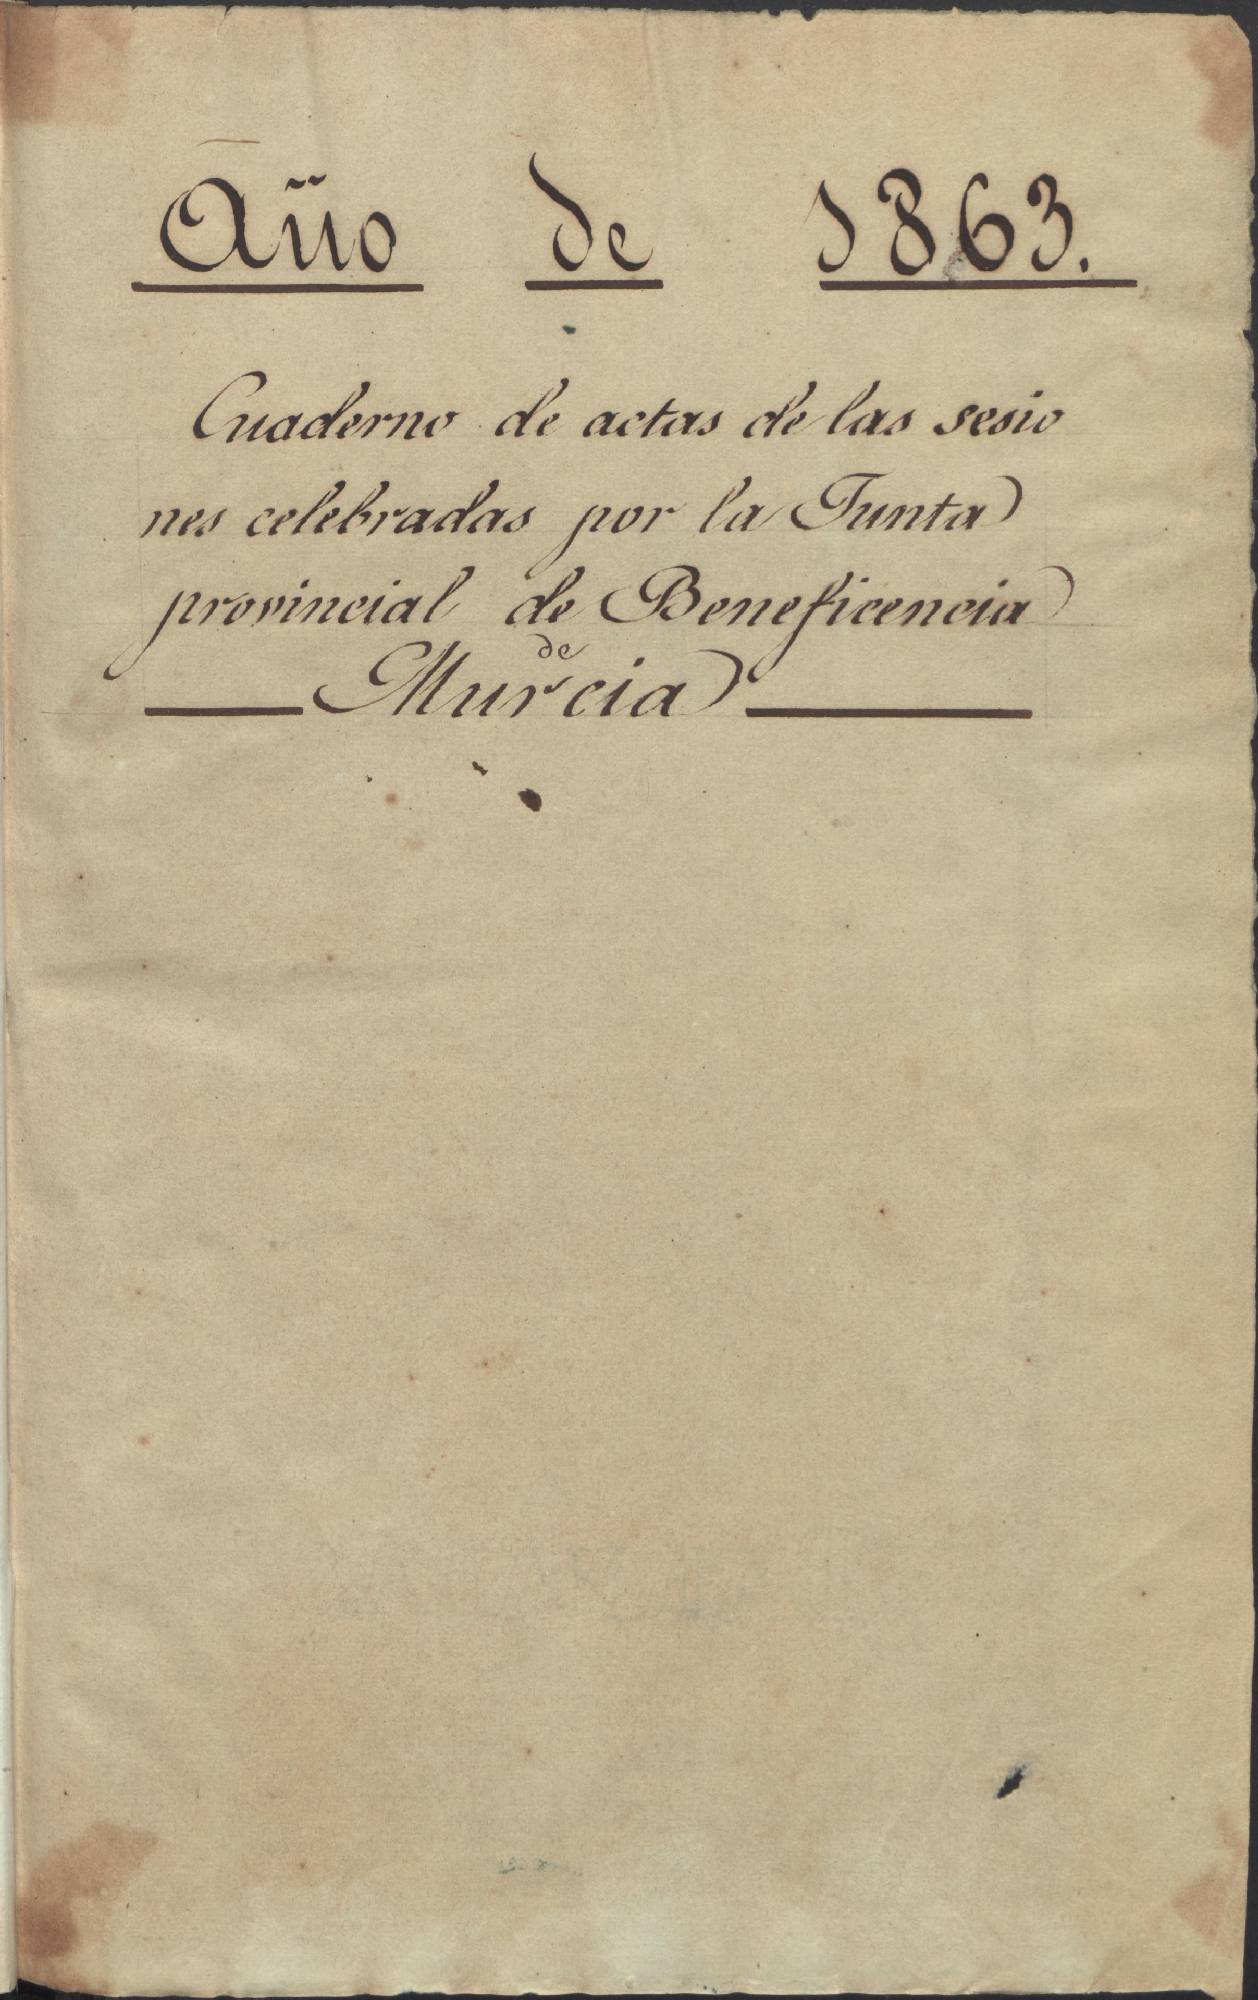 Registro de actas de sesiones de la Junta Provincial de Beneficencia de Murcia. Año 1863.